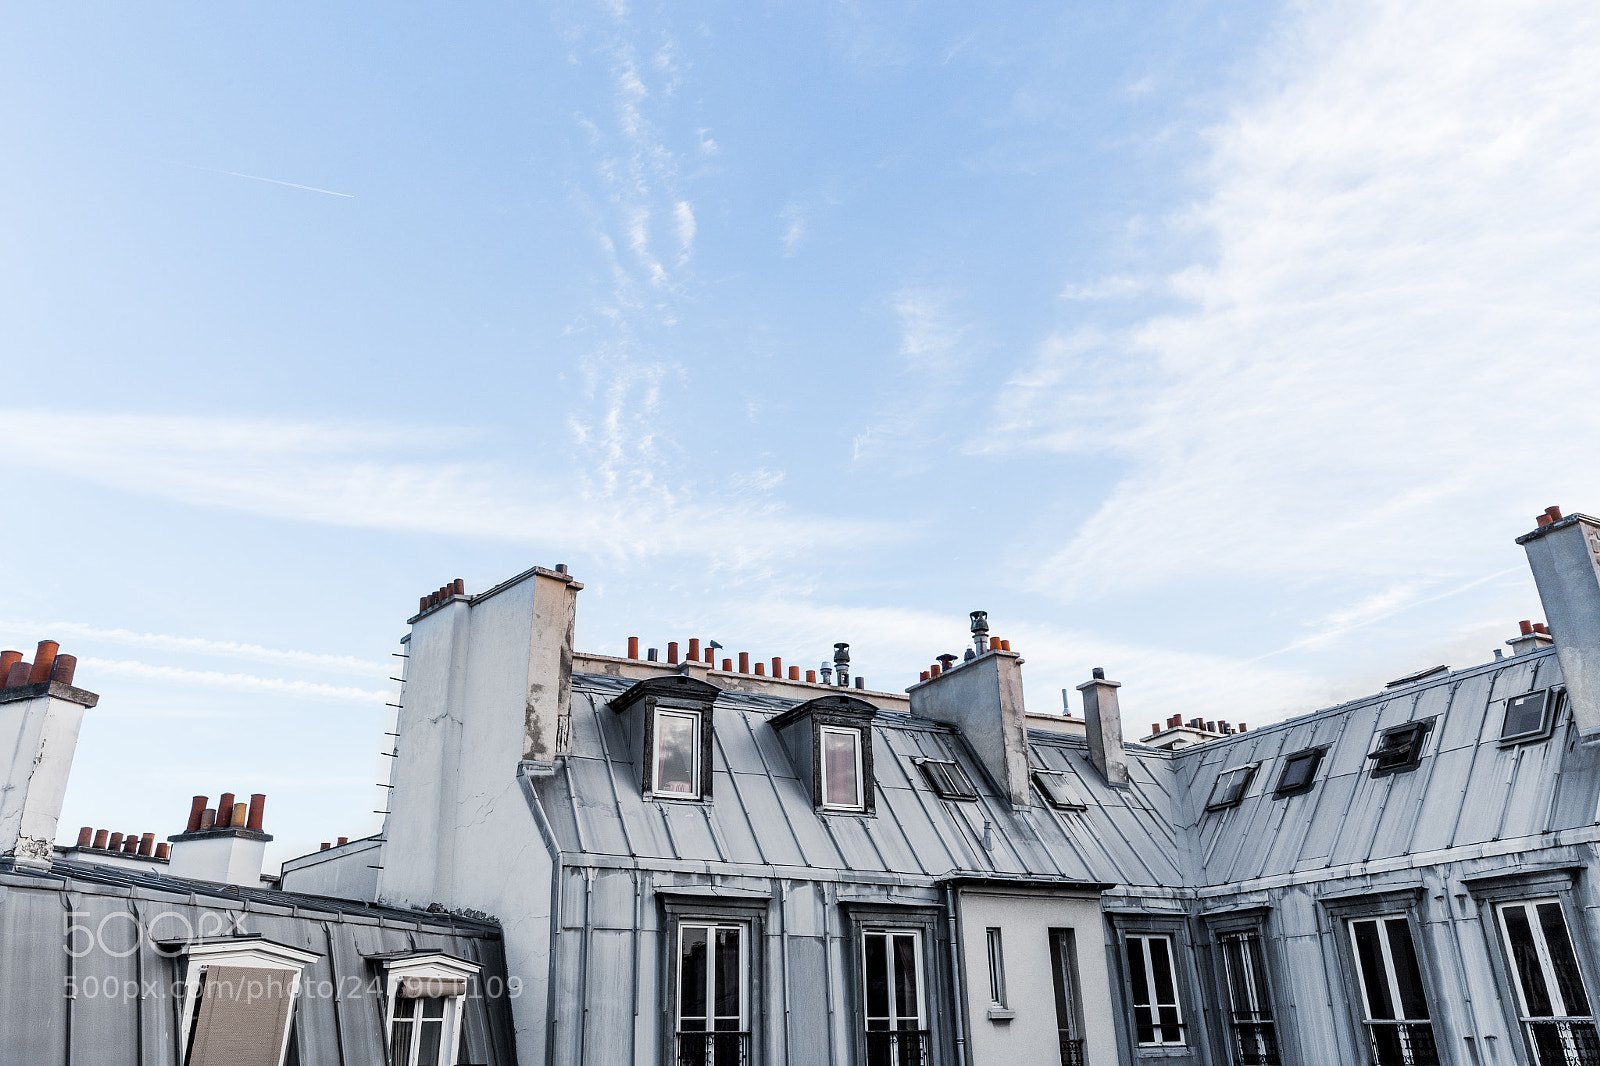 Canon EOS 6D sample photo. Paris roofs (paris france) photography